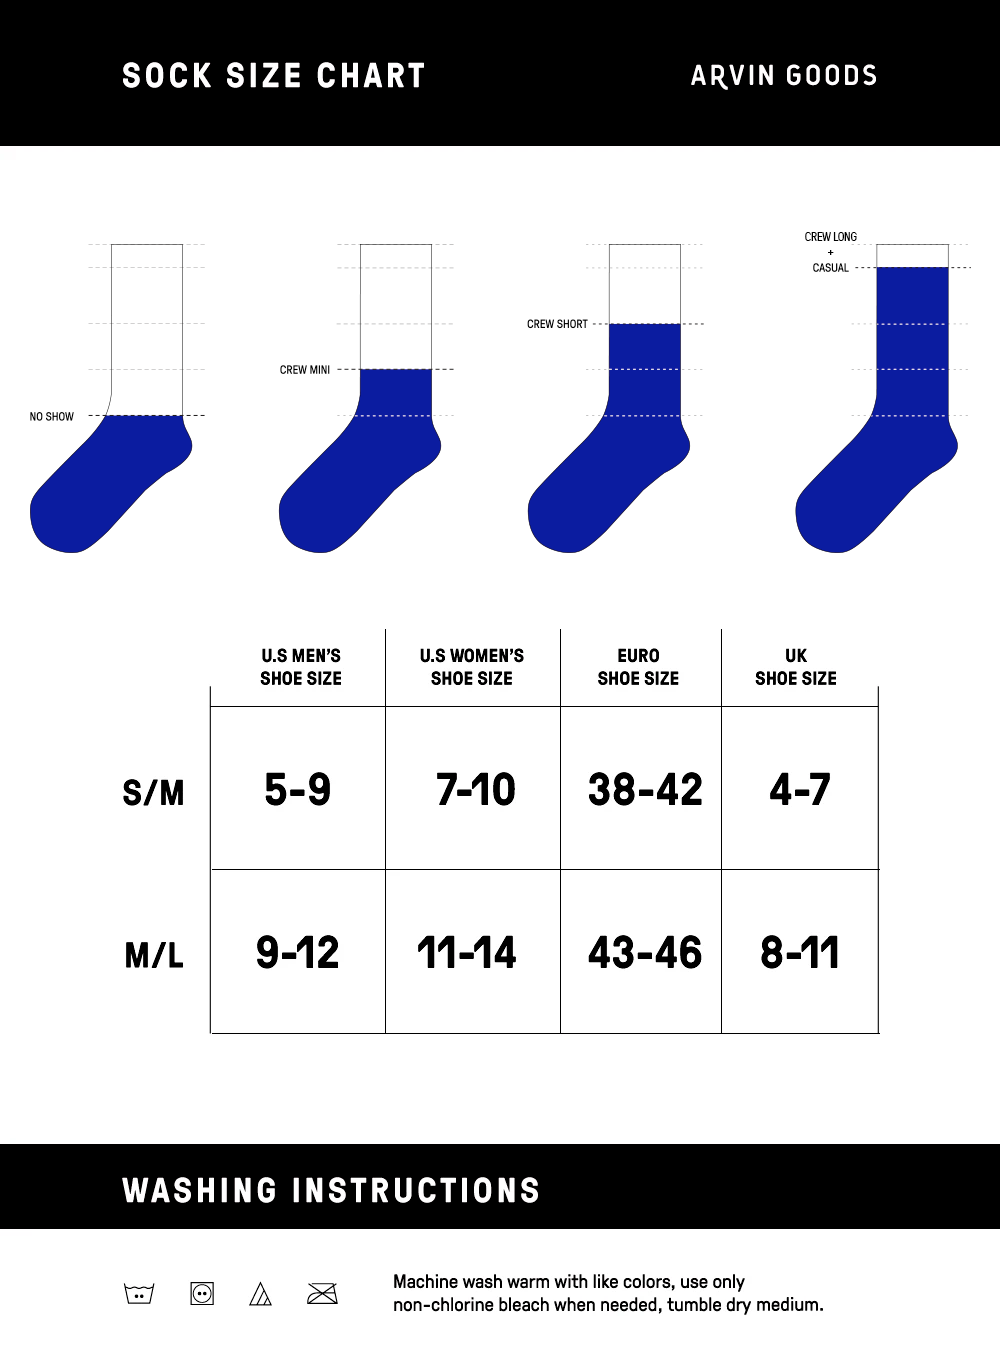 socks-size-chart-arvin-goods